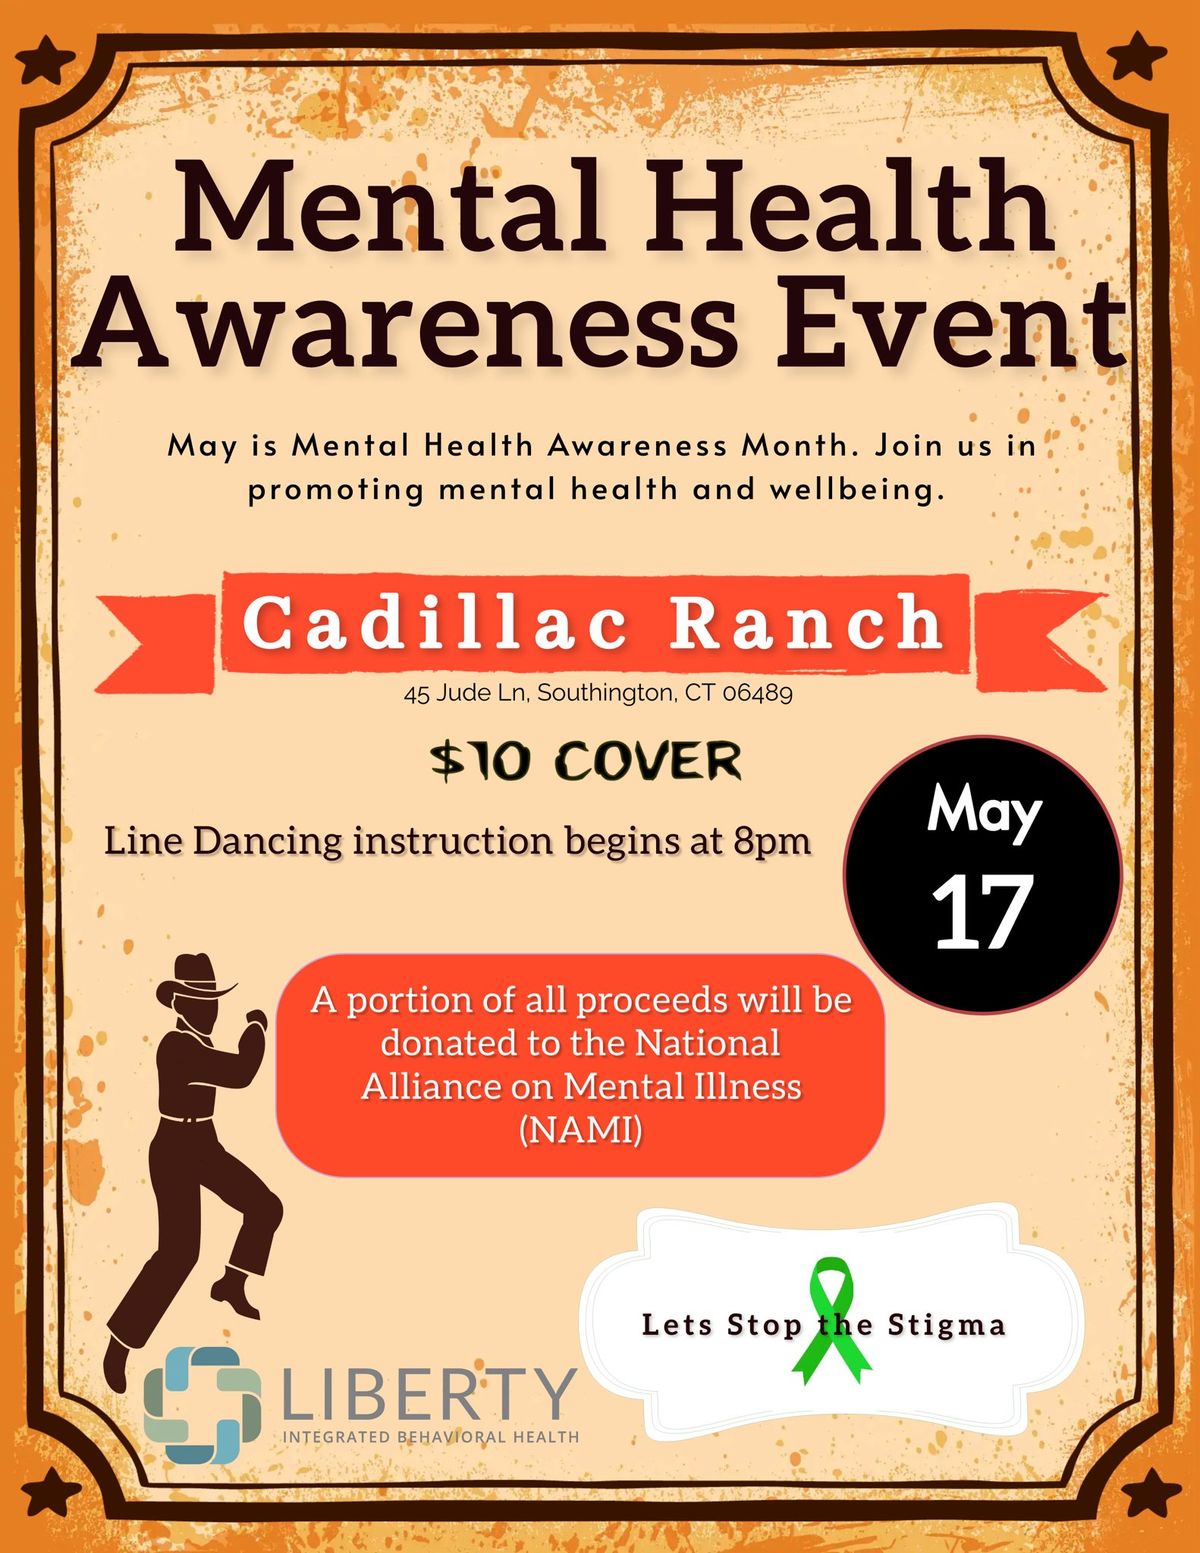 Mental Health Awareness Night at Cadillac Ranch